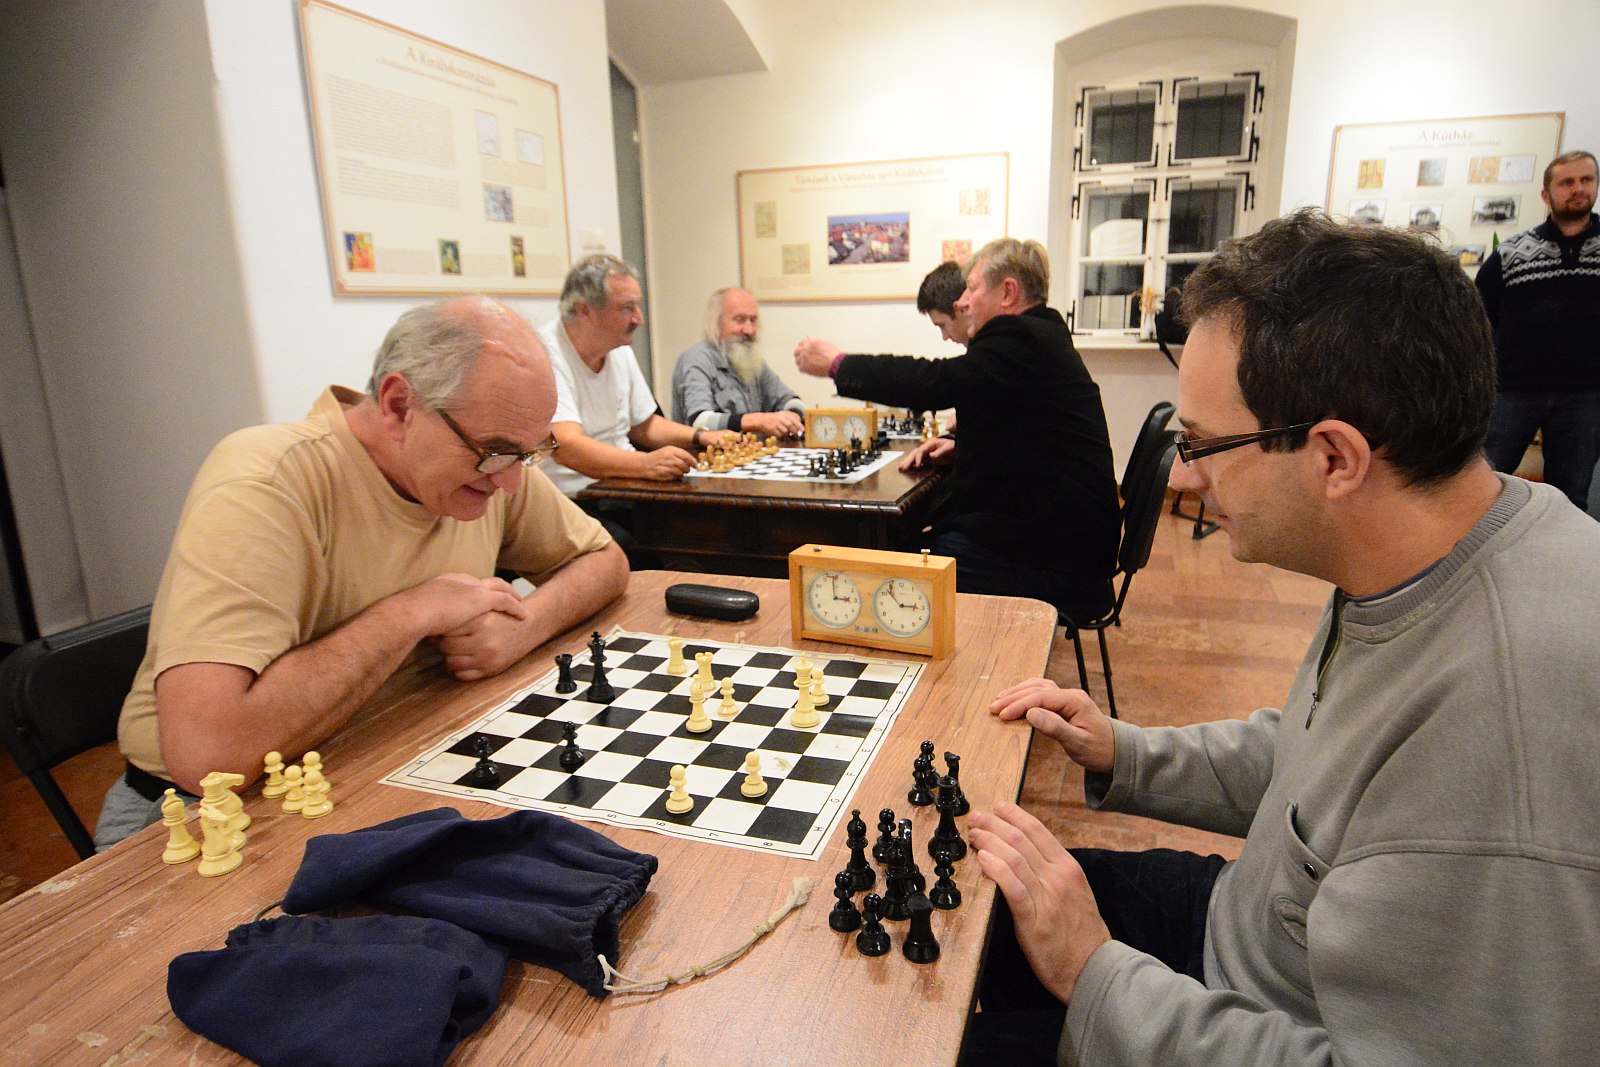 Háromból három - pontveszteség nélkül vezeti a tabellát a fehérvári sakkcsapat